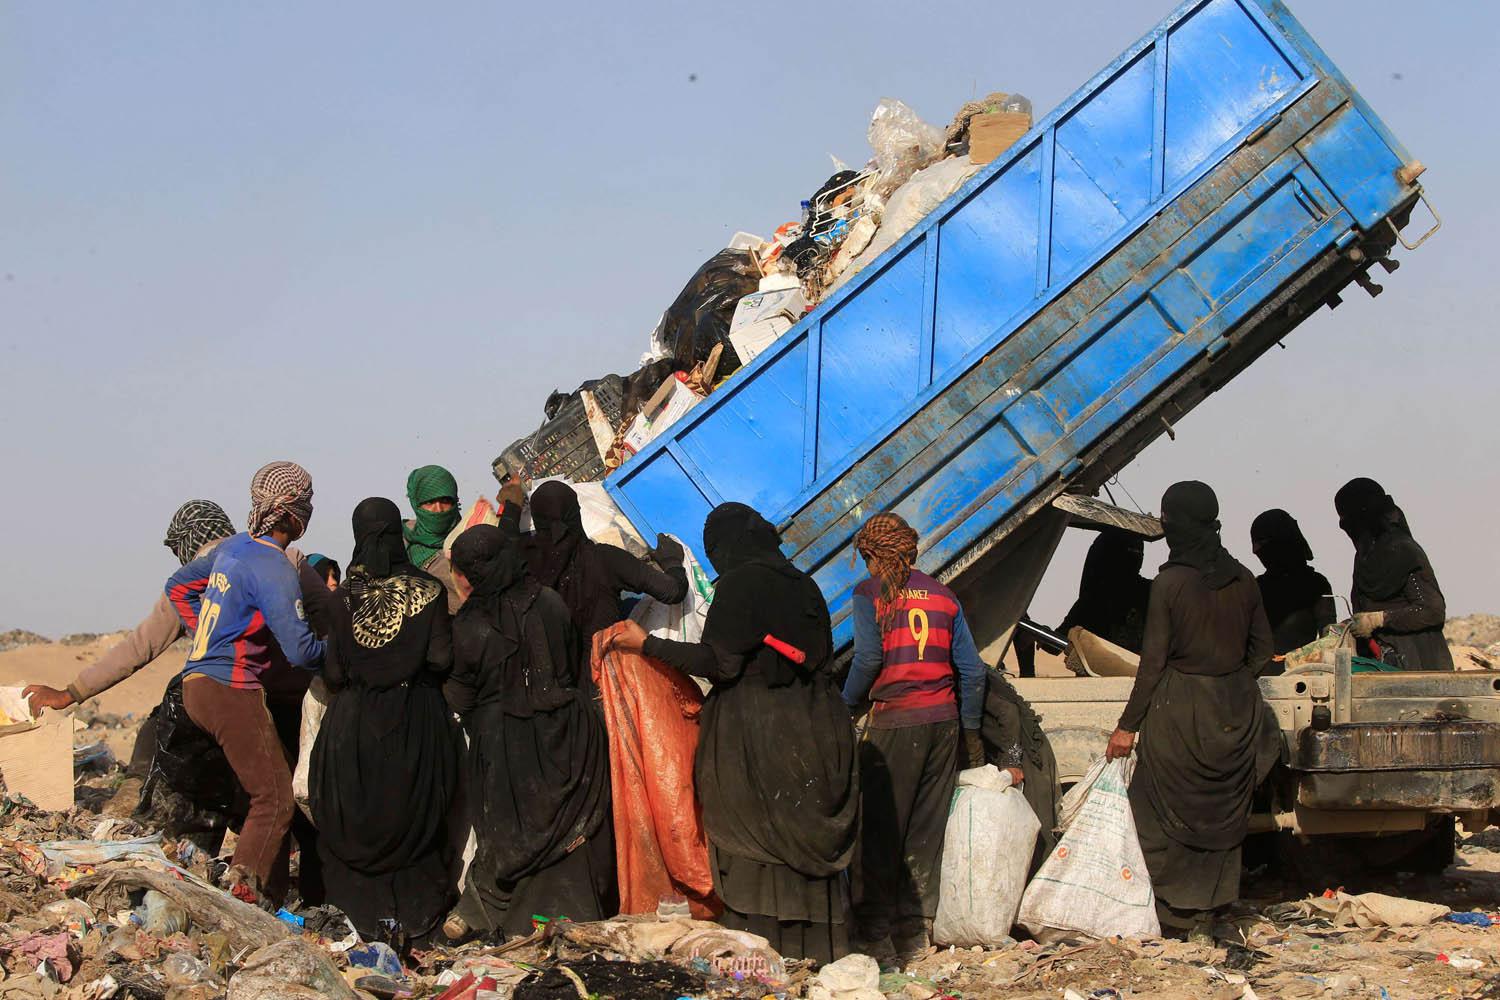 عراقيات ينتظرن رمي الزبالة للعثور على ما يمكن بيعه منها